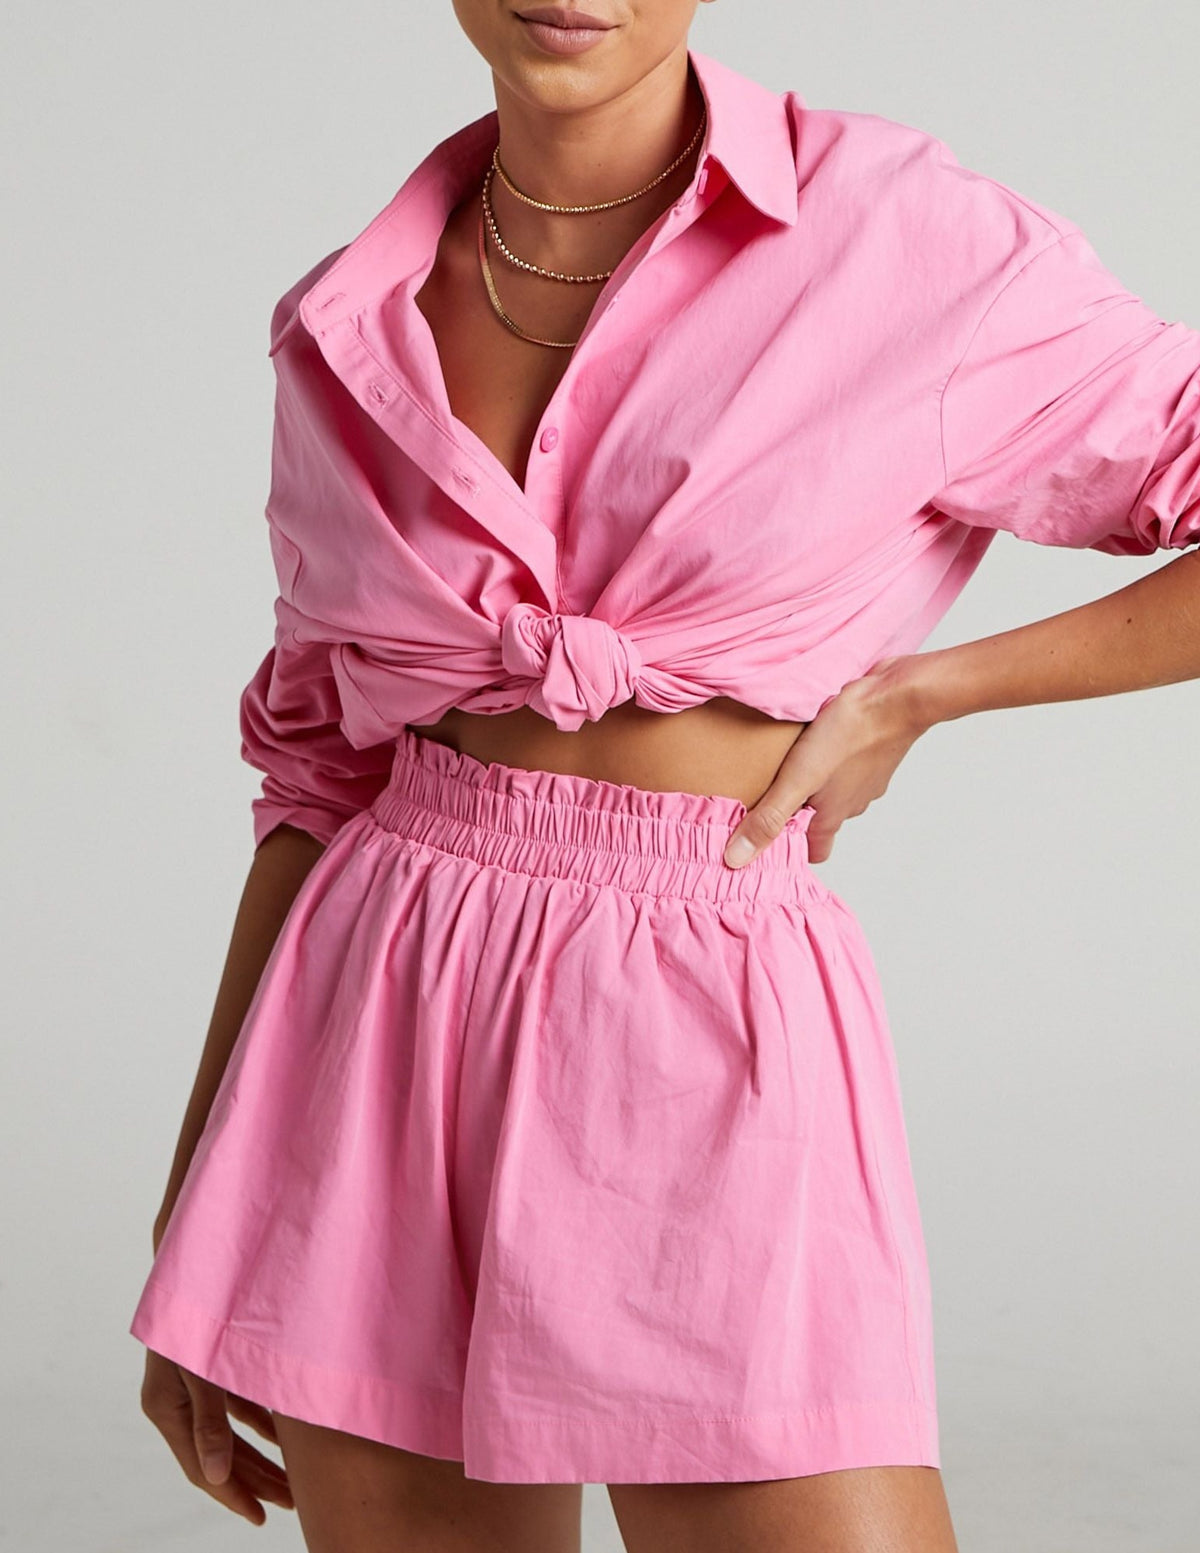 Shorts Alya - Moody Fashion Pink / S